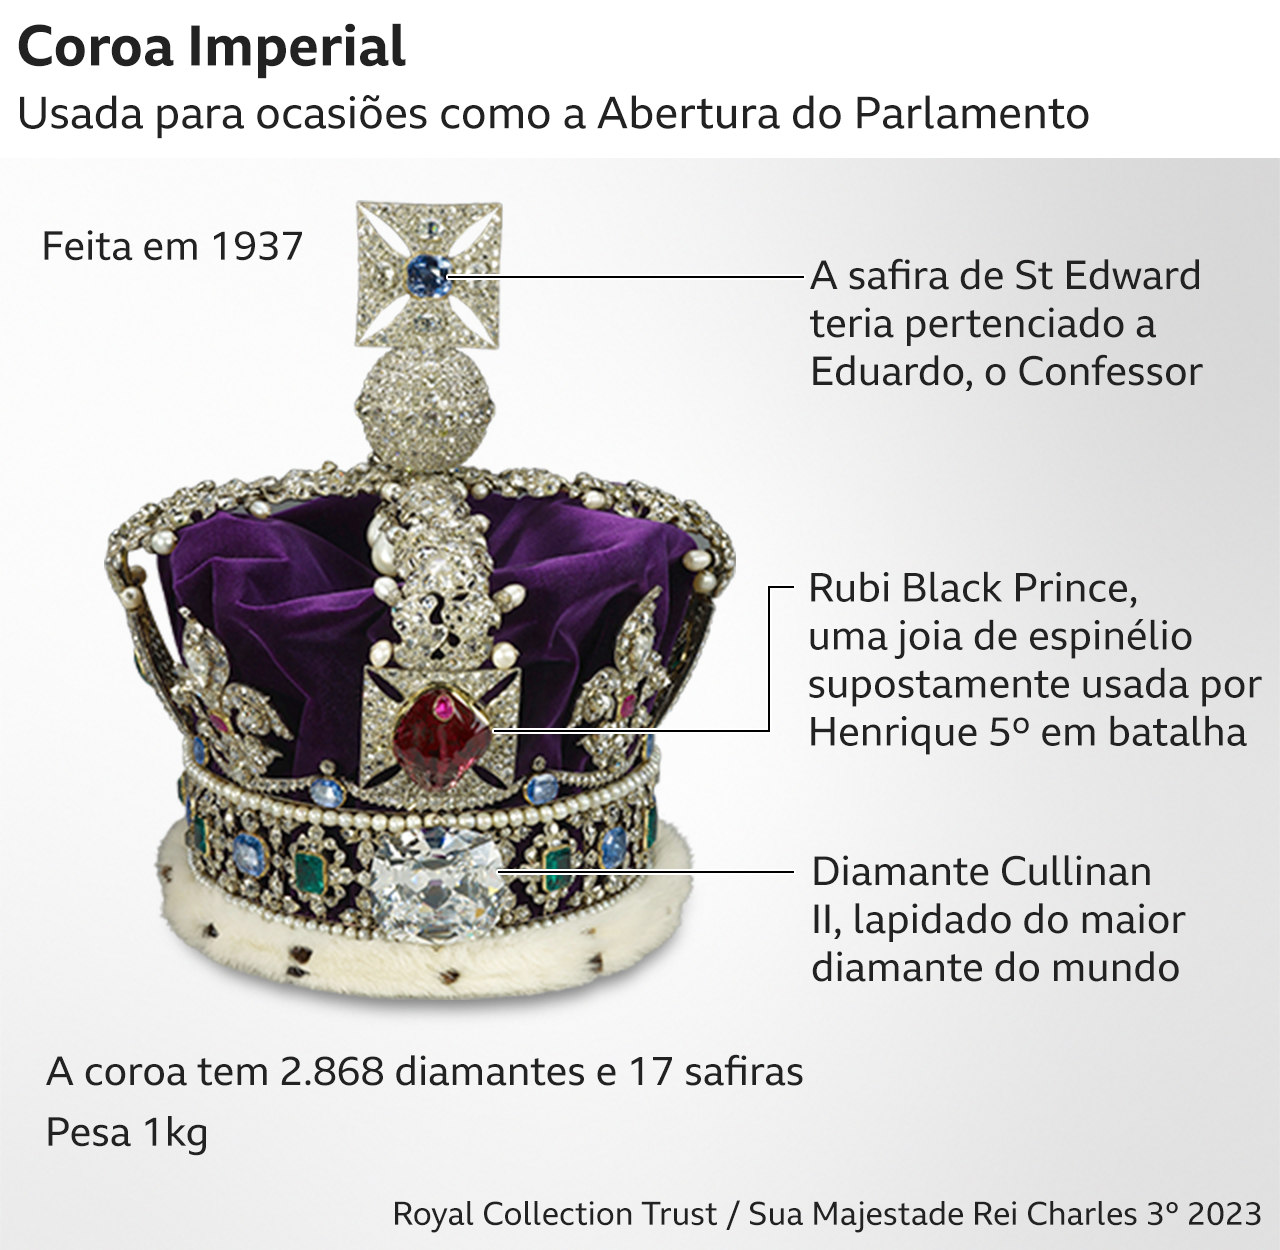 Detalhes da Coroa Imperial